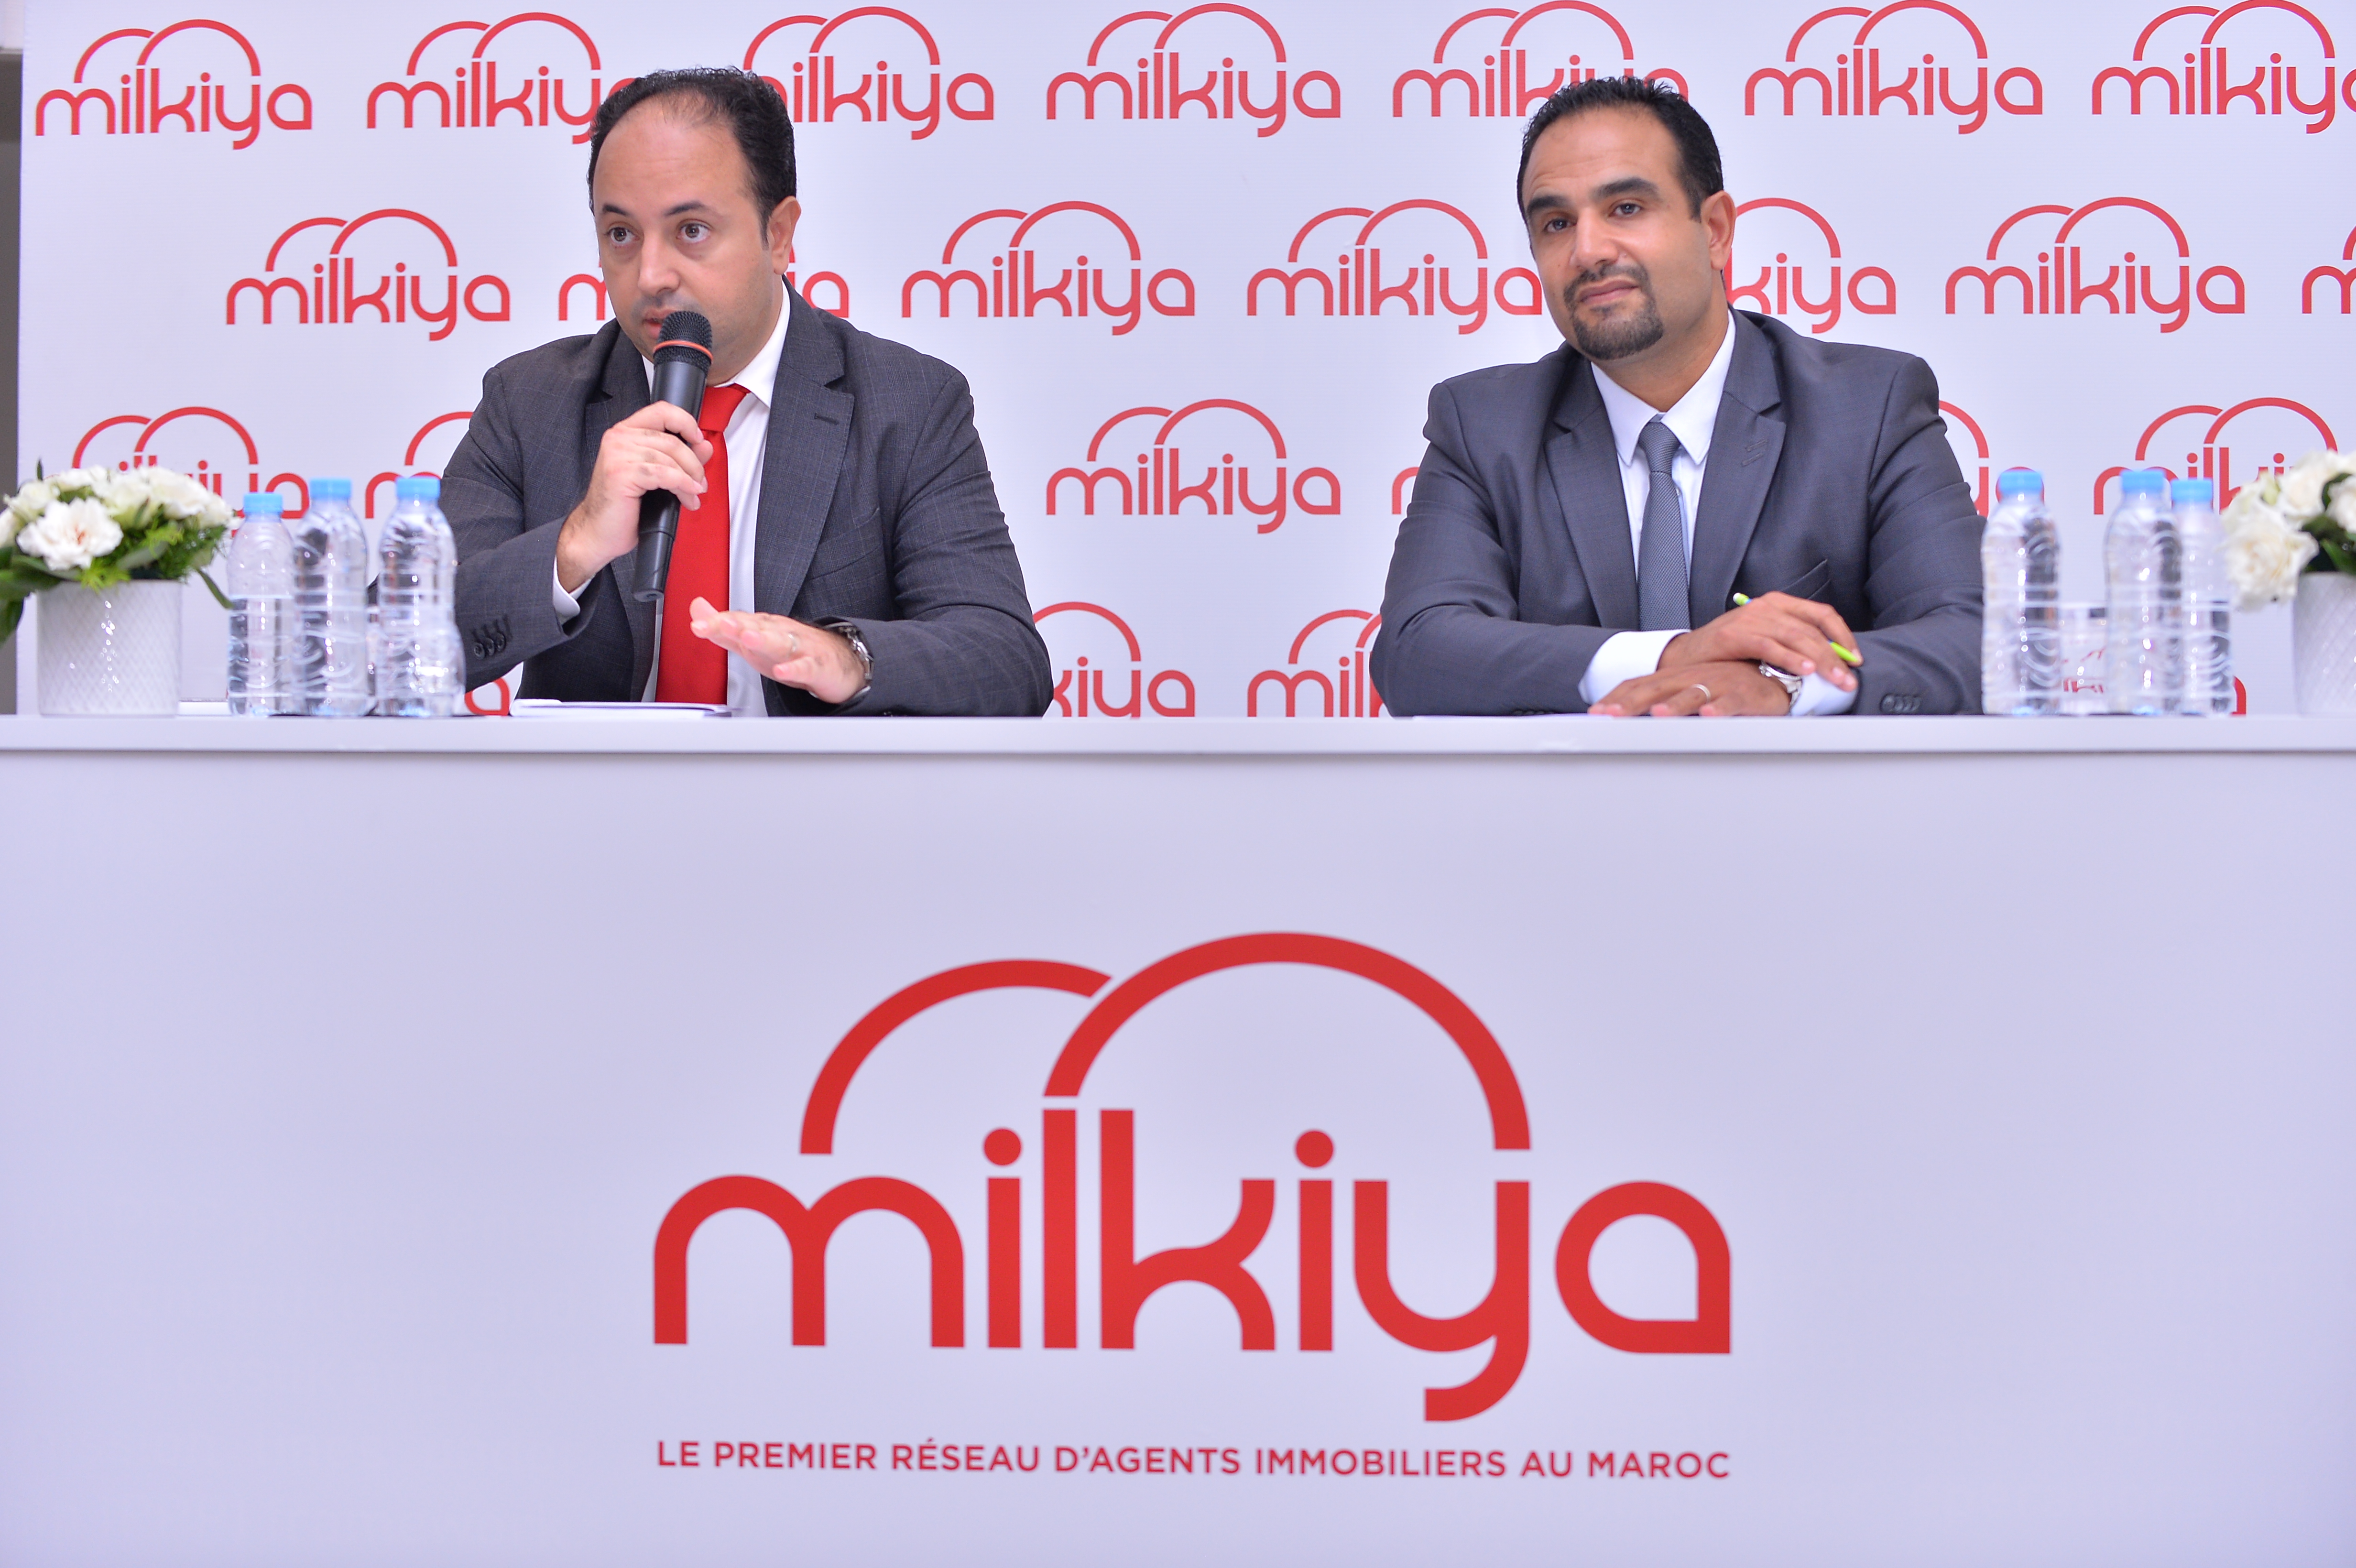 Lancement de Milkiya, premier réseau d’agents immobiliers indépendants au Maroc